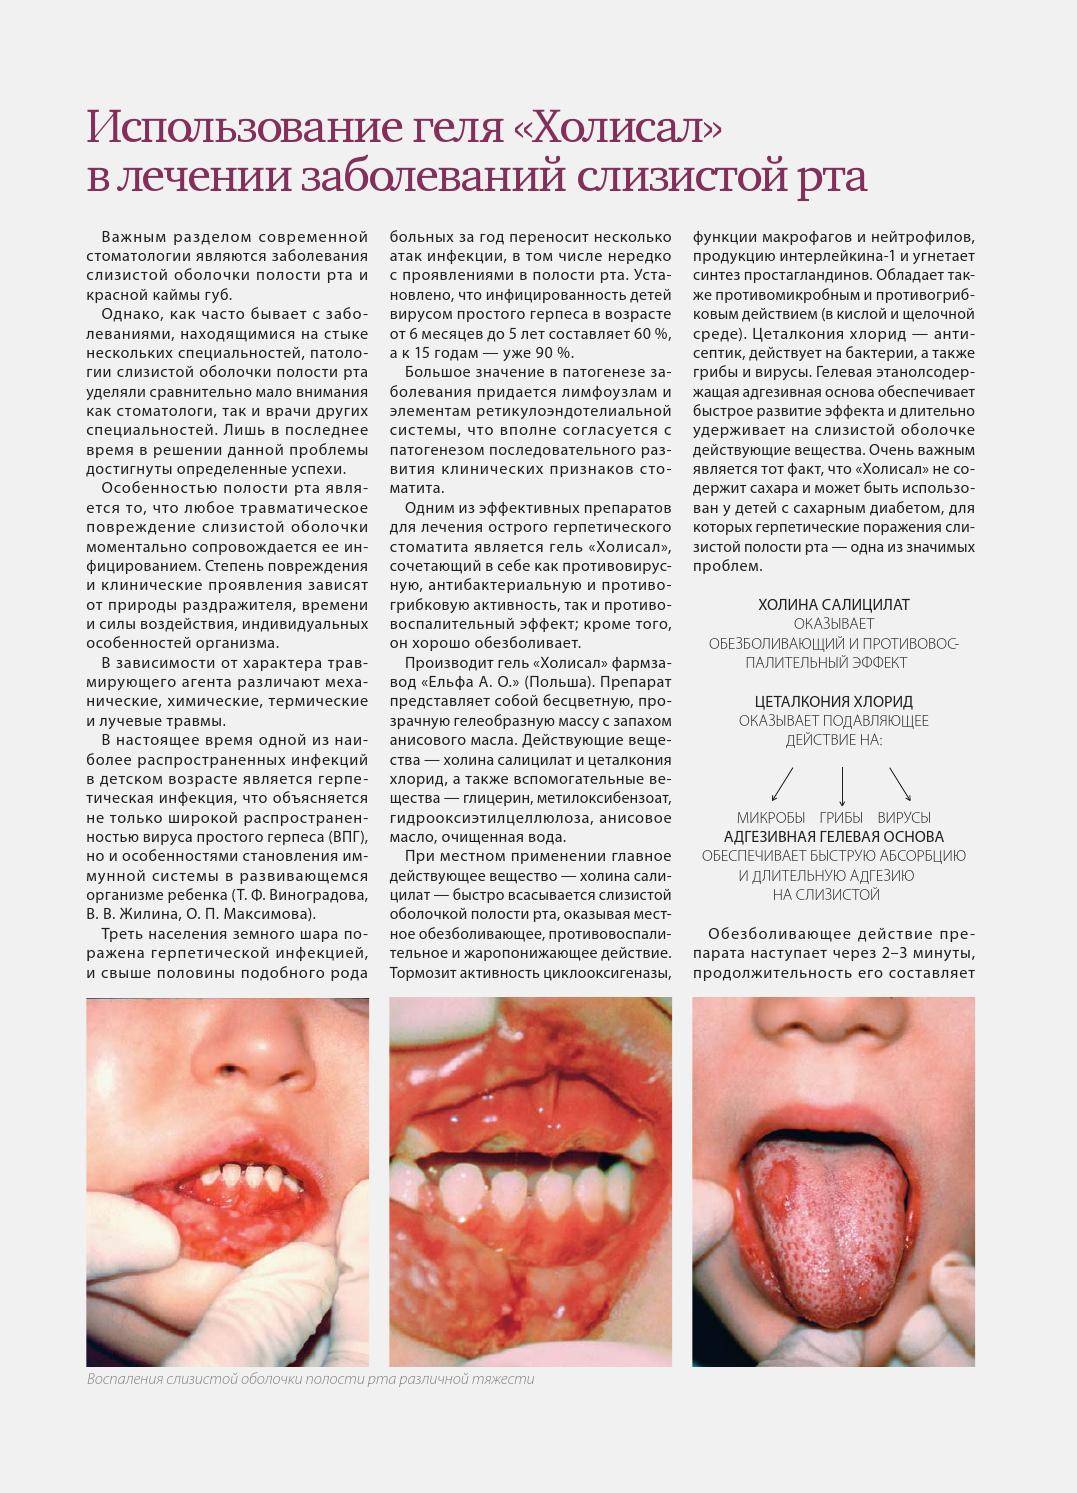 Болезни полости рта, их симптомы и методы лечения